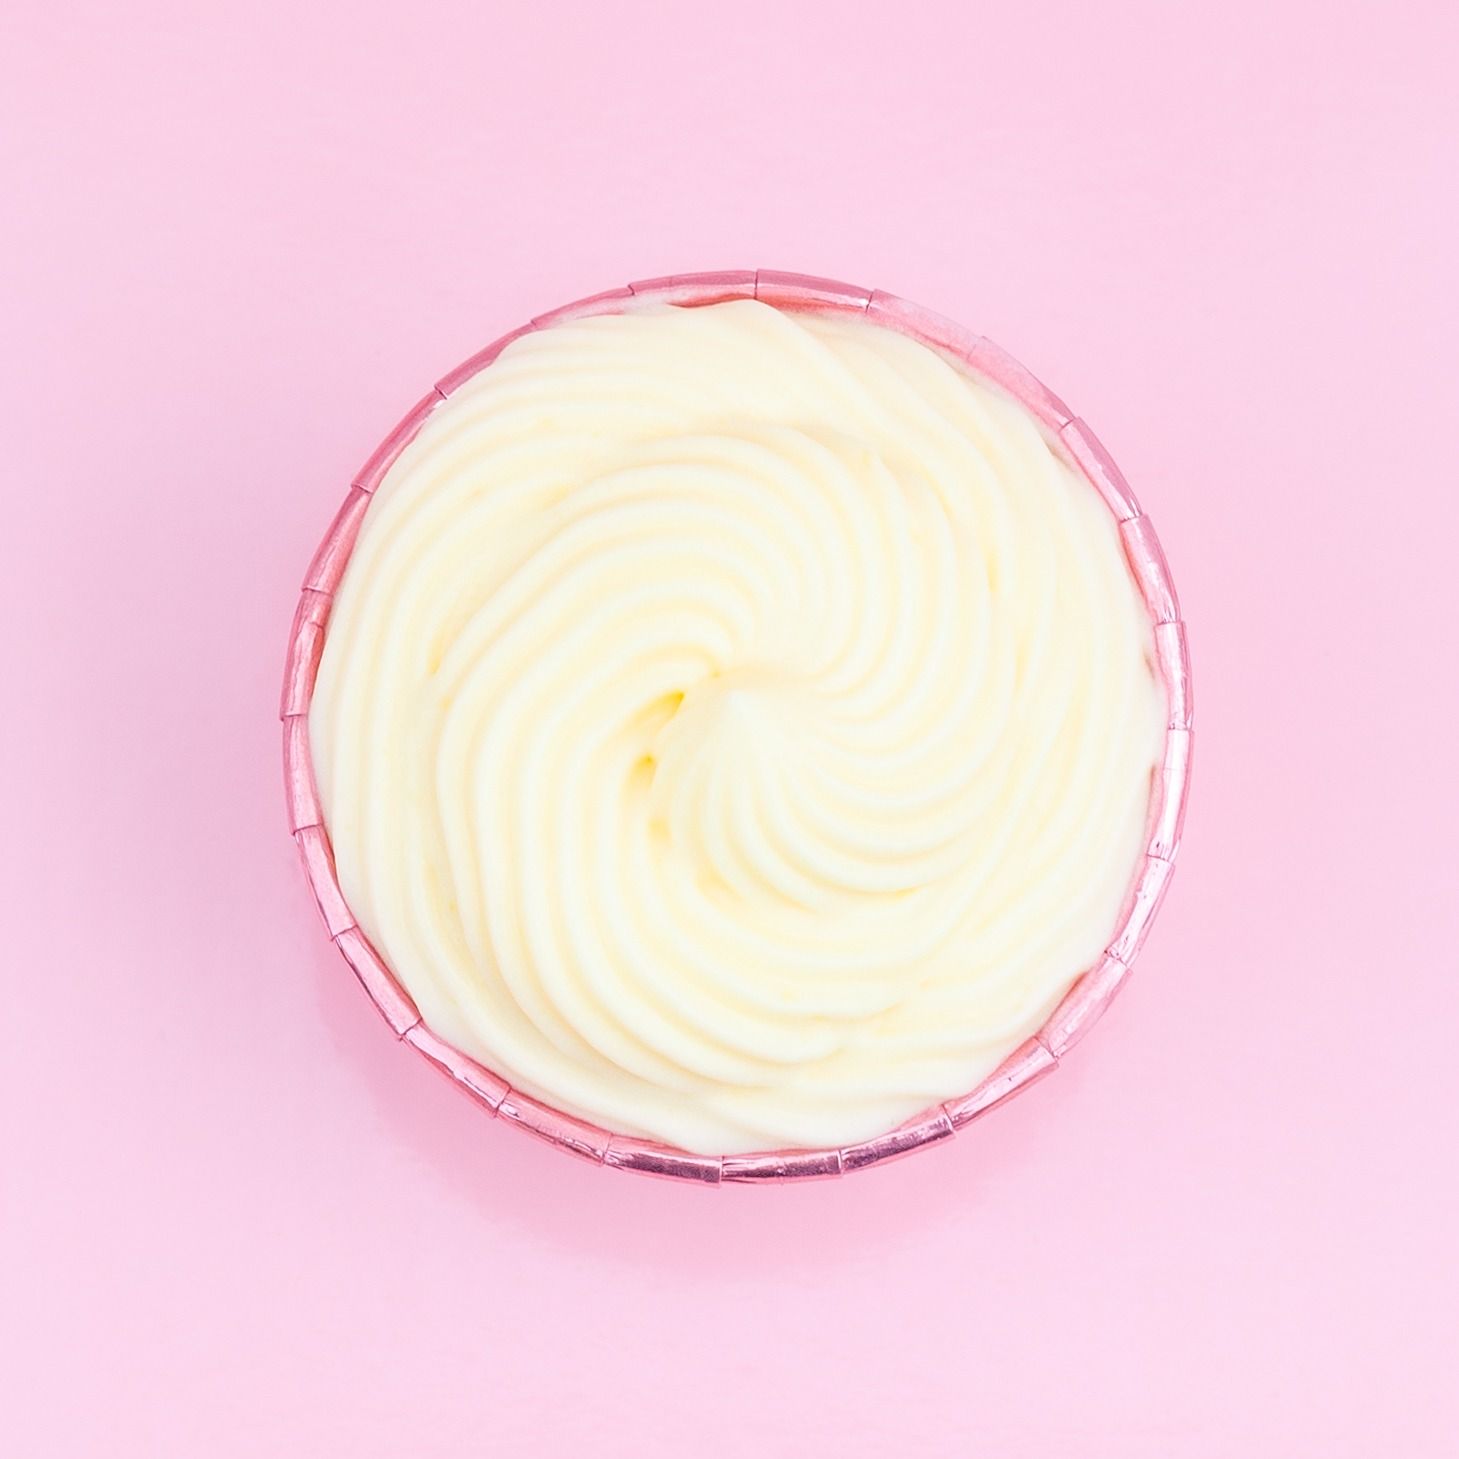 Pastry Crème